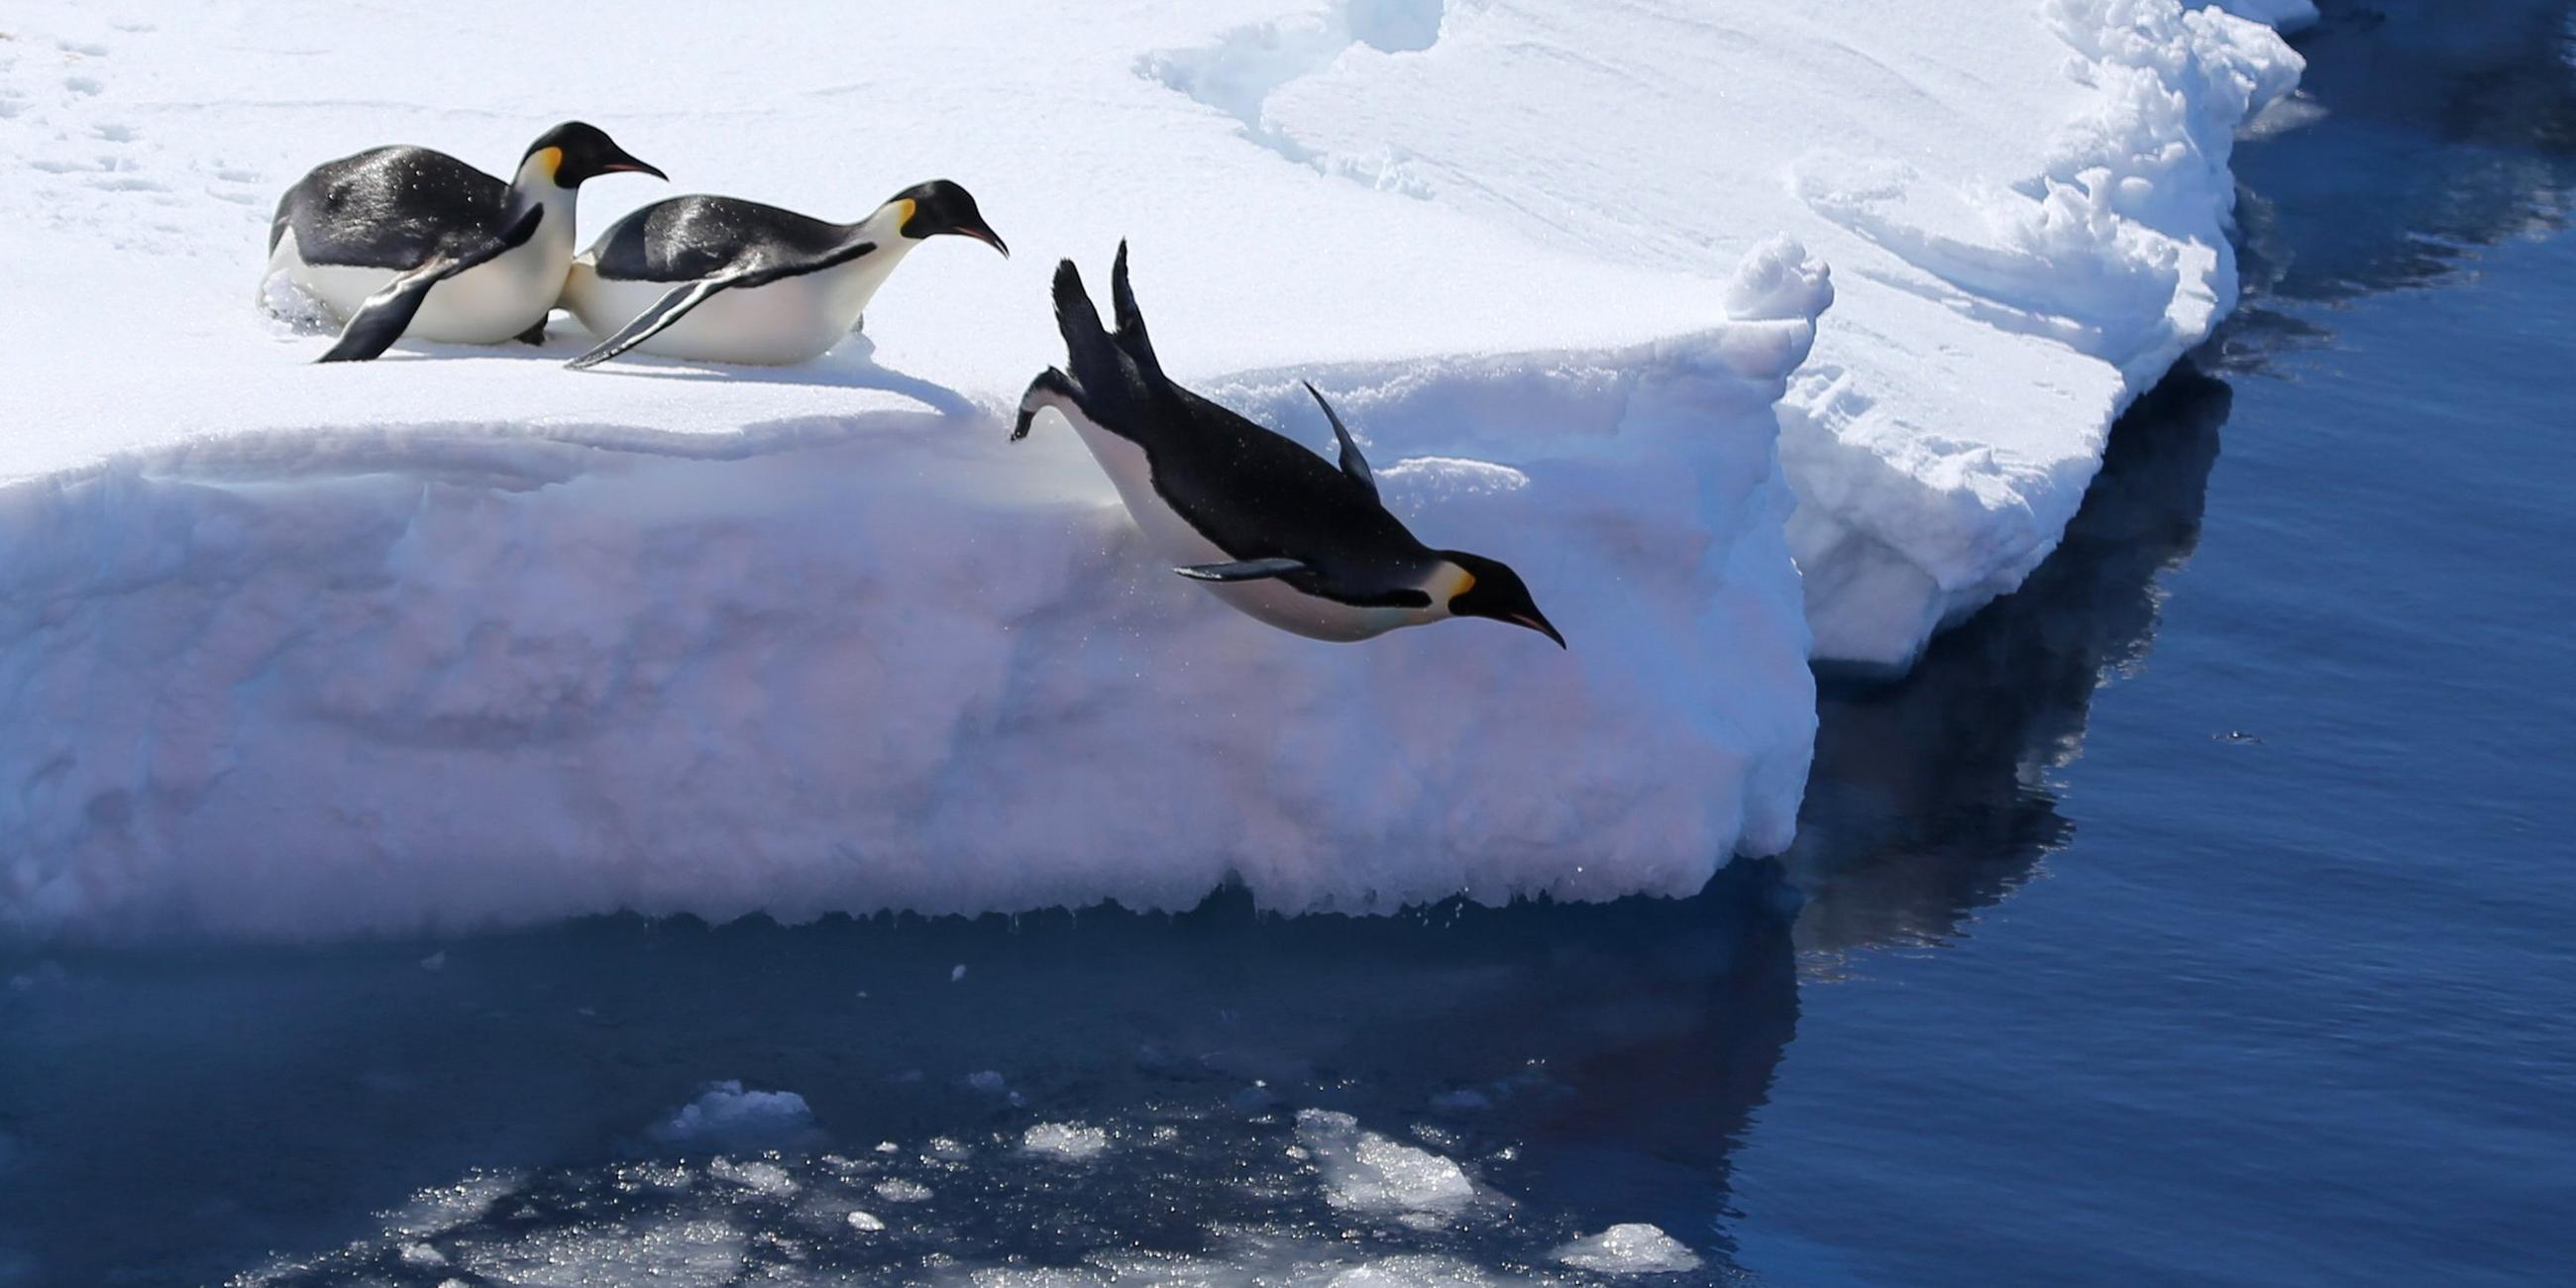 Antarktis, Prydz Bay: Kaiserpinguine springen von einer Eiskante ins Meer.